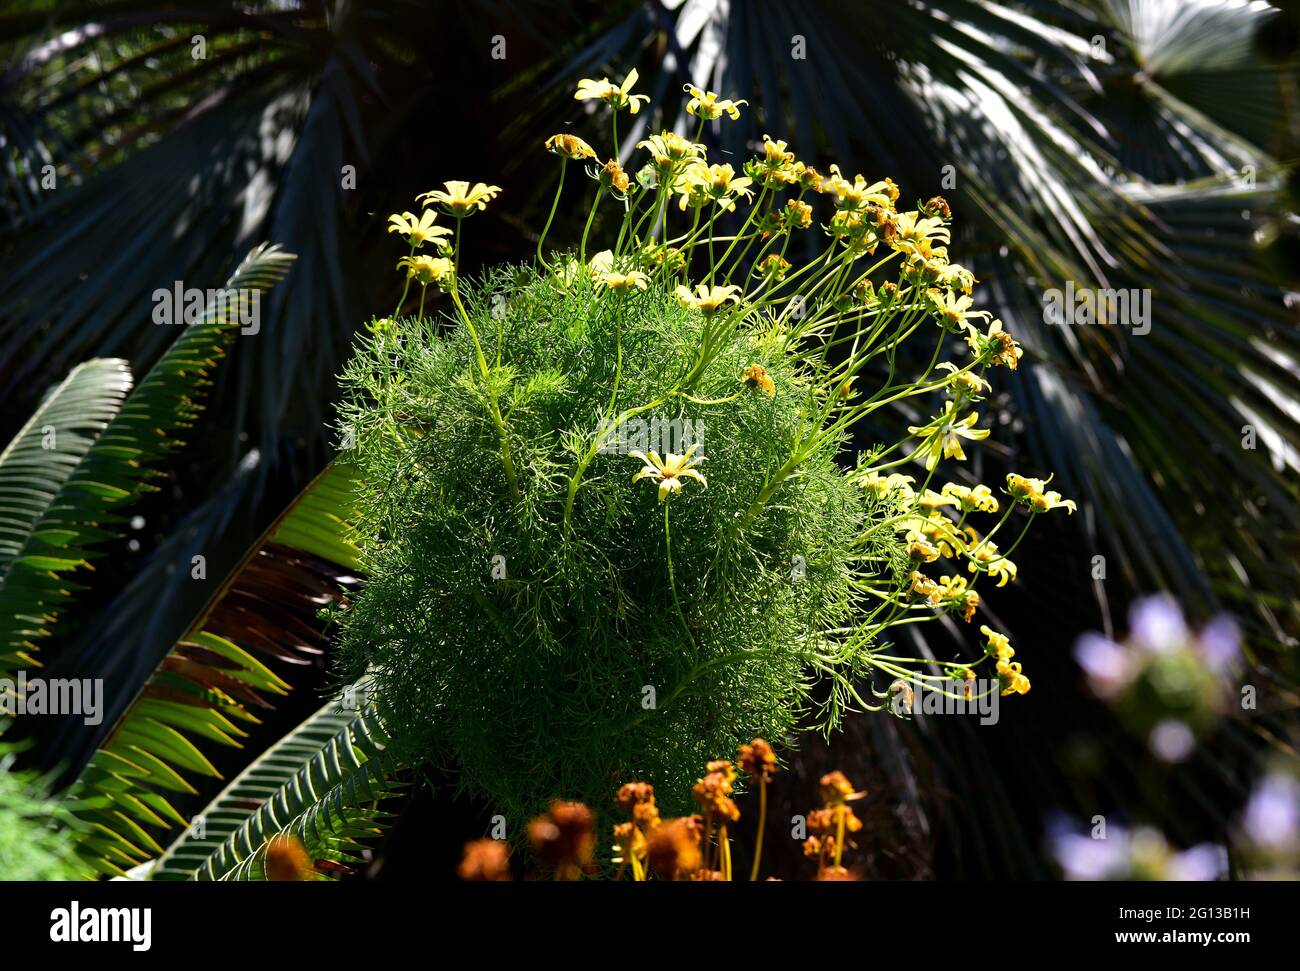 Der Riese coreopsis (Coreopsis gigantea) ist eine holzige, mehrjährige Pflanze, die in Kalifornien (USA) und Baja California (Mexiko) beheimatet ist. Stockfoto